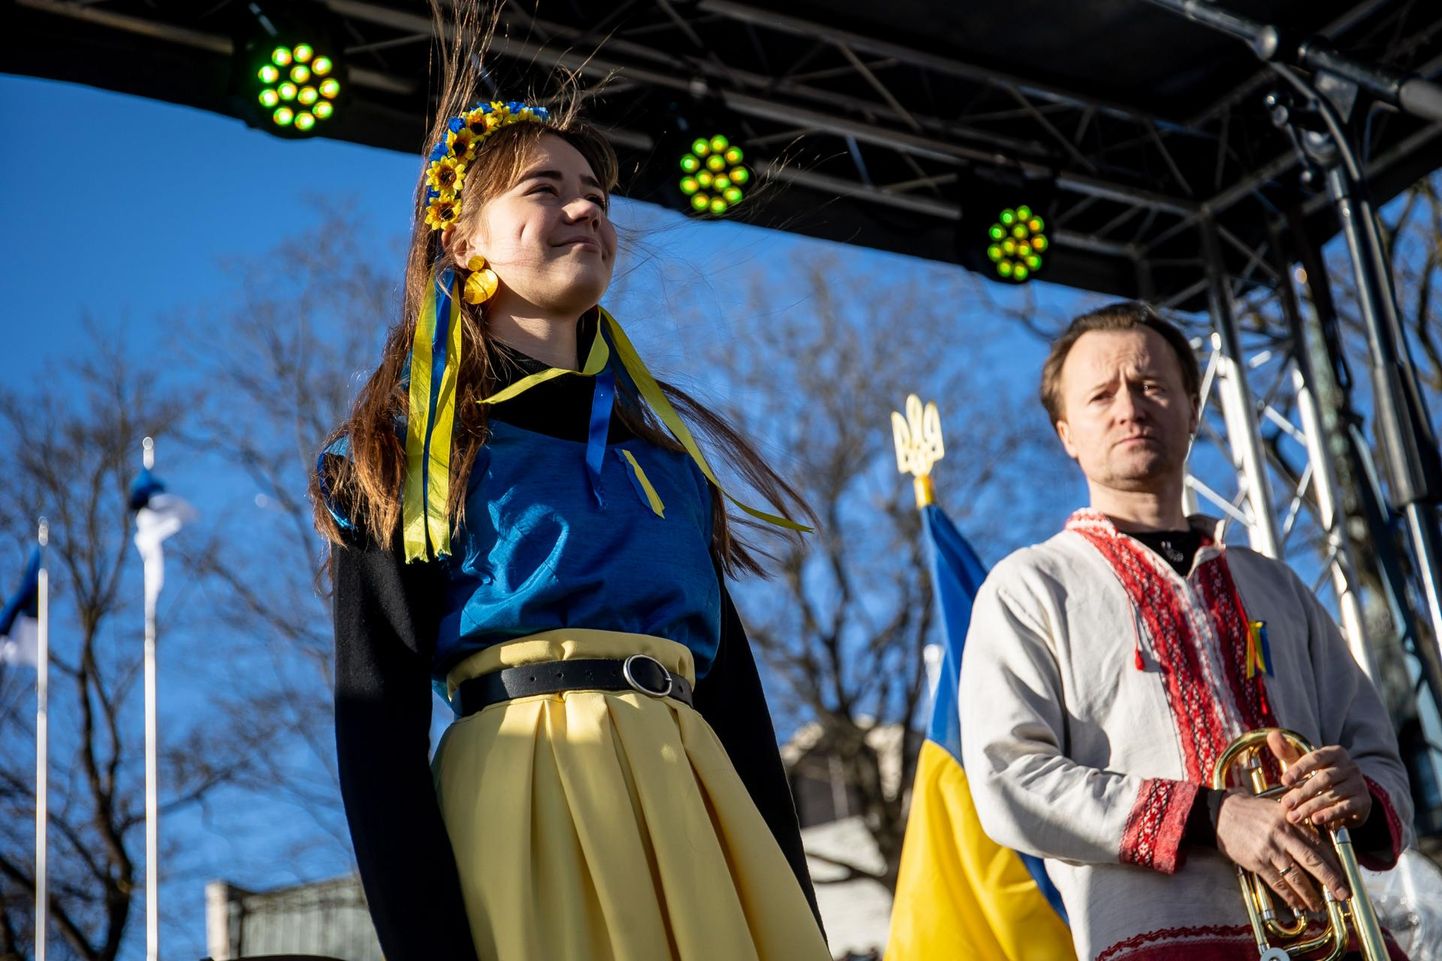 Eesti-Ukraina folkmuusika ansambli Svjata Vatra solist Ruslan Trochynskyi esines meeleavaldusel Ukraina toetuseks.